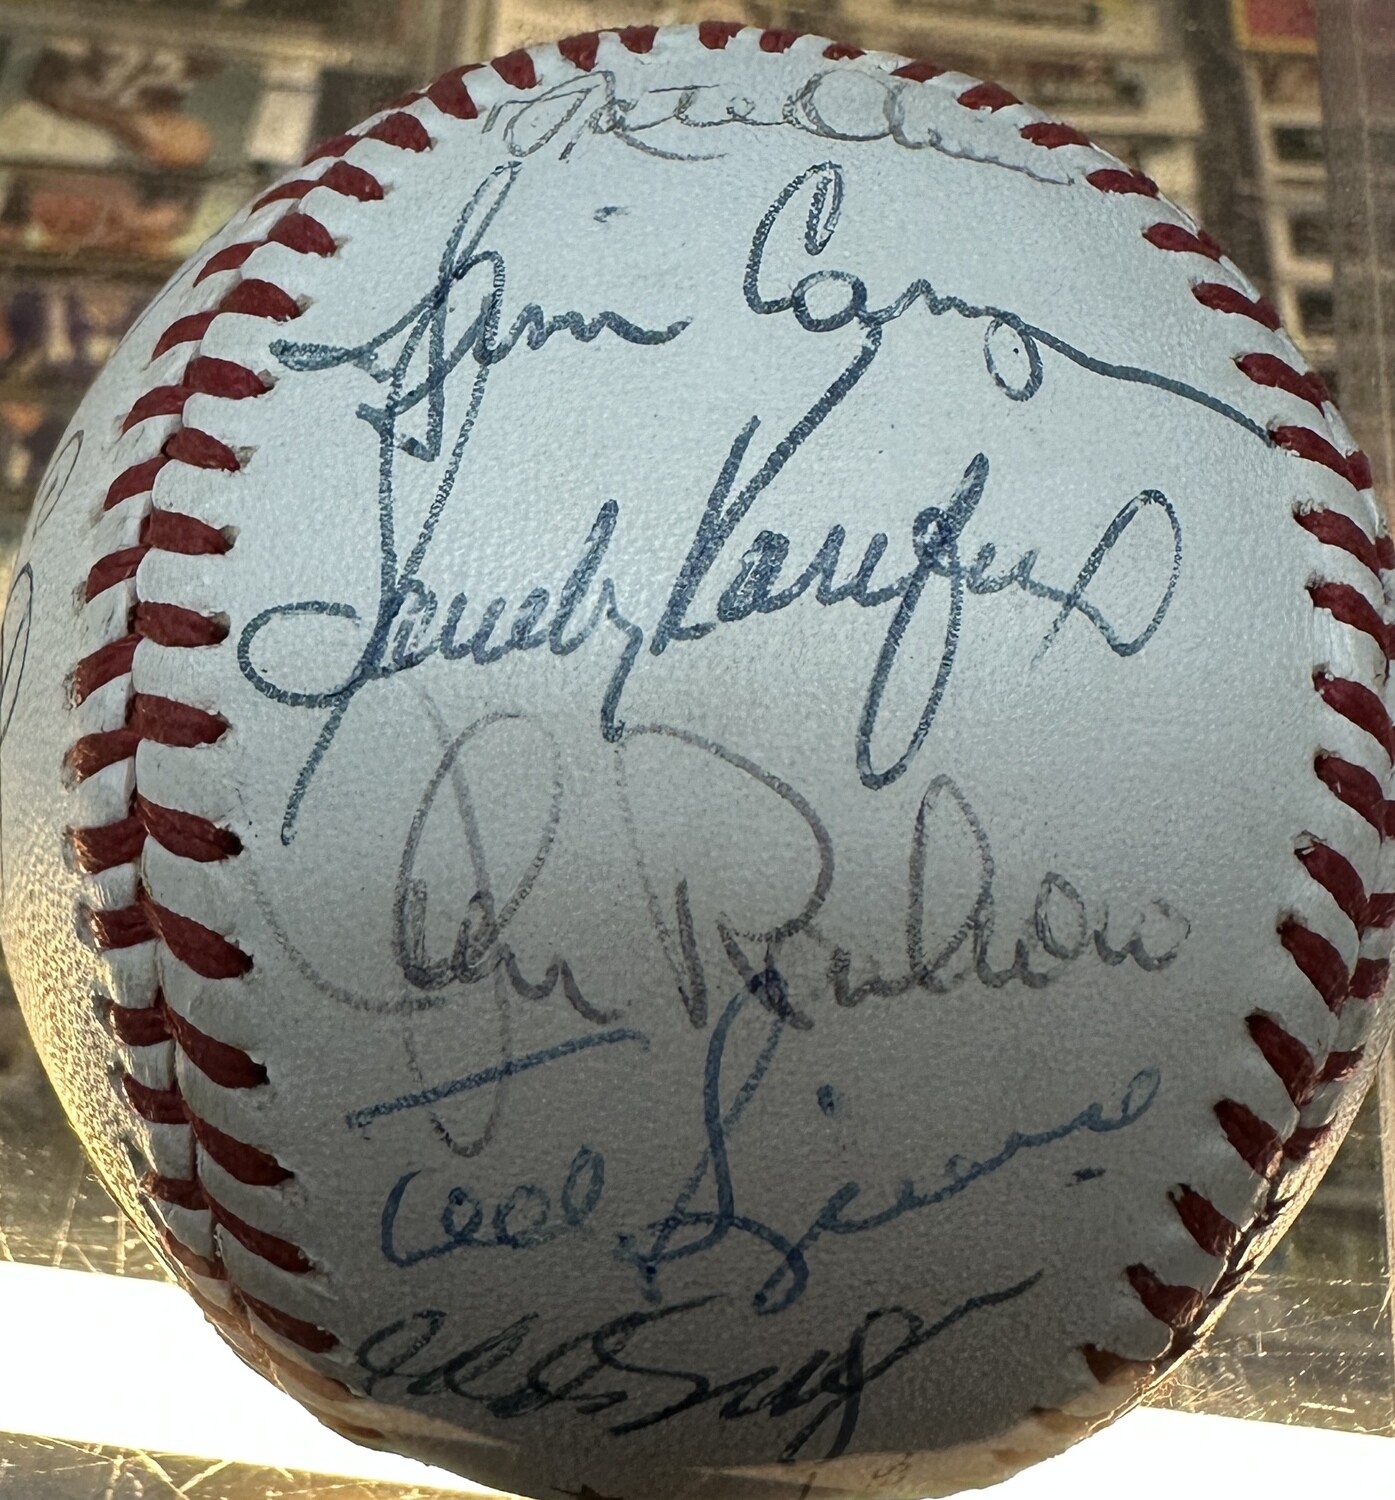 Dodgers Greats Ball 20 Signatures Koufax PSA